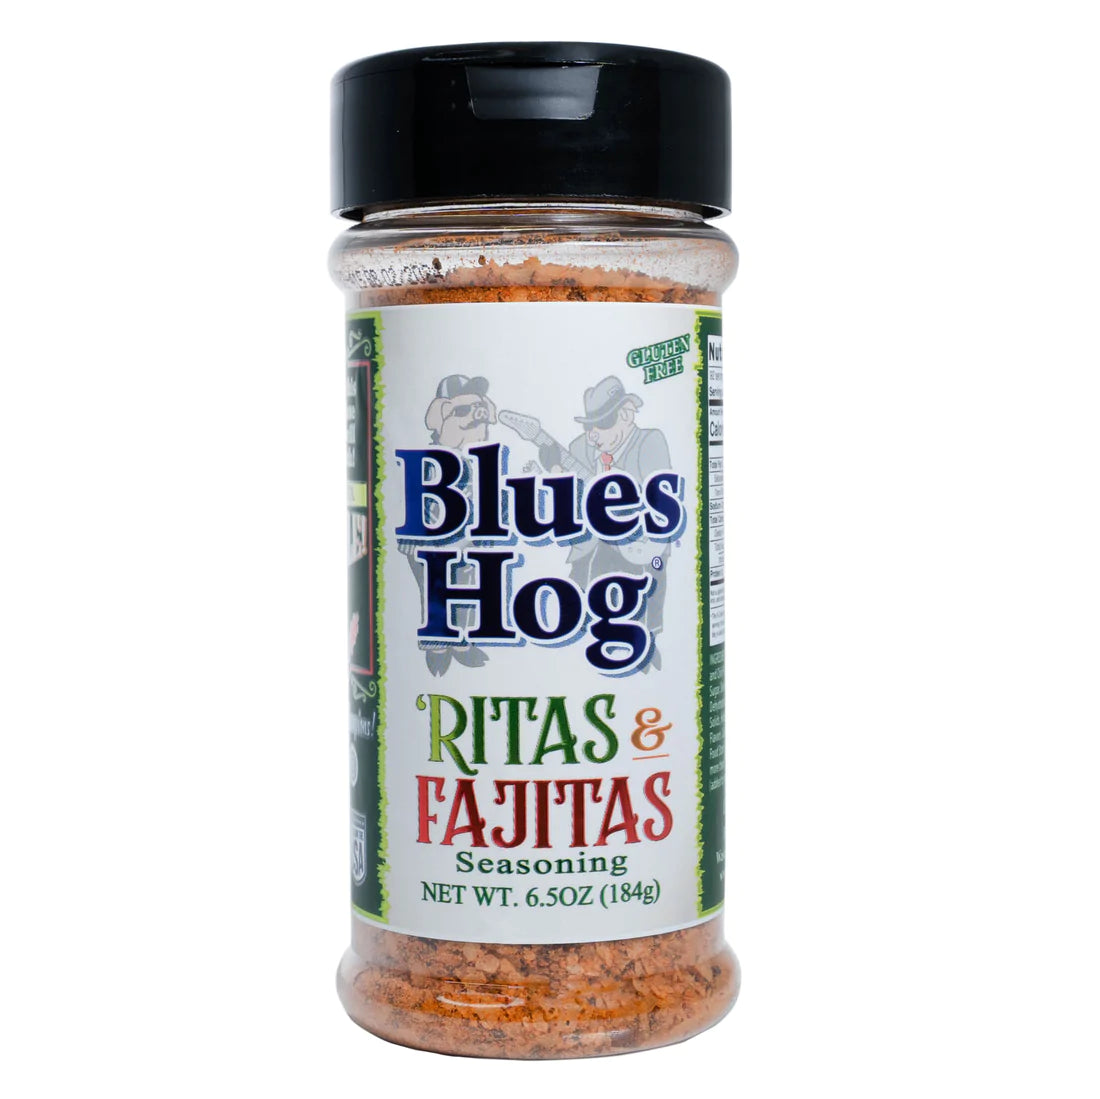 Blues Hog Ritas & Fajitas Seasoning